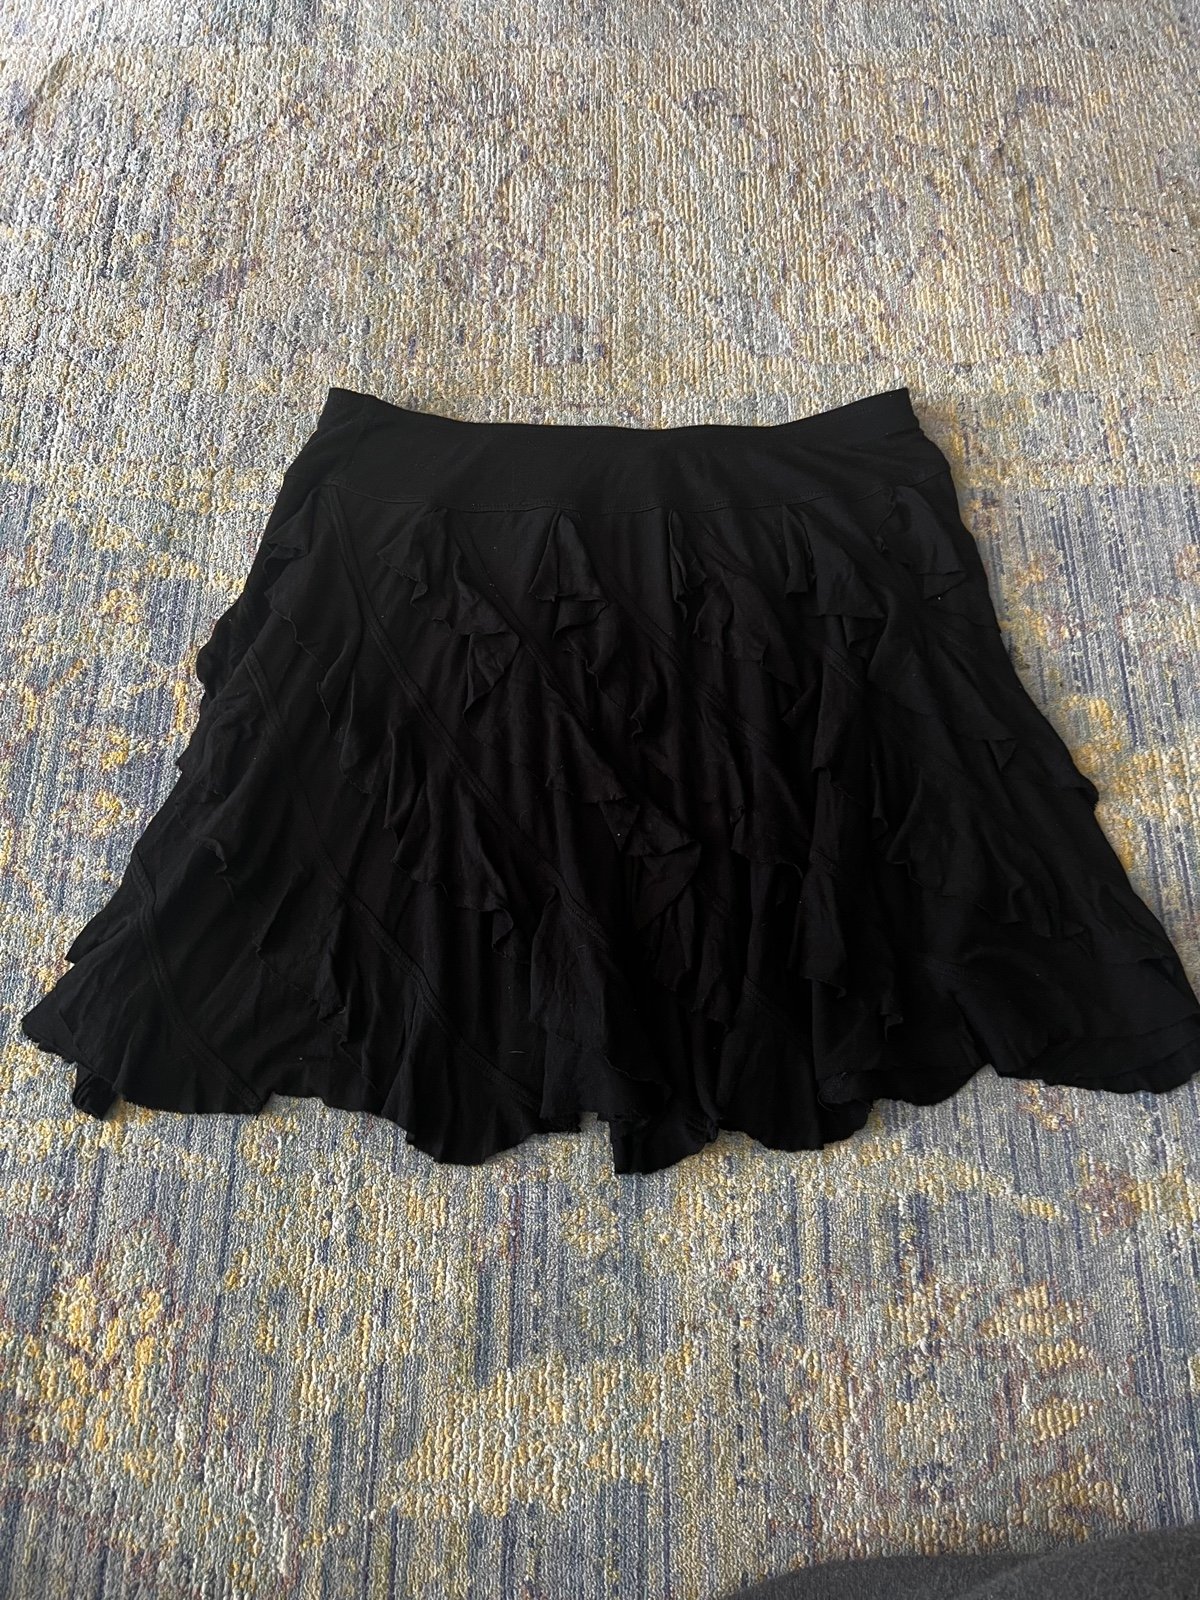 Amazing INC International Concepts Ruffle Skirt Size La